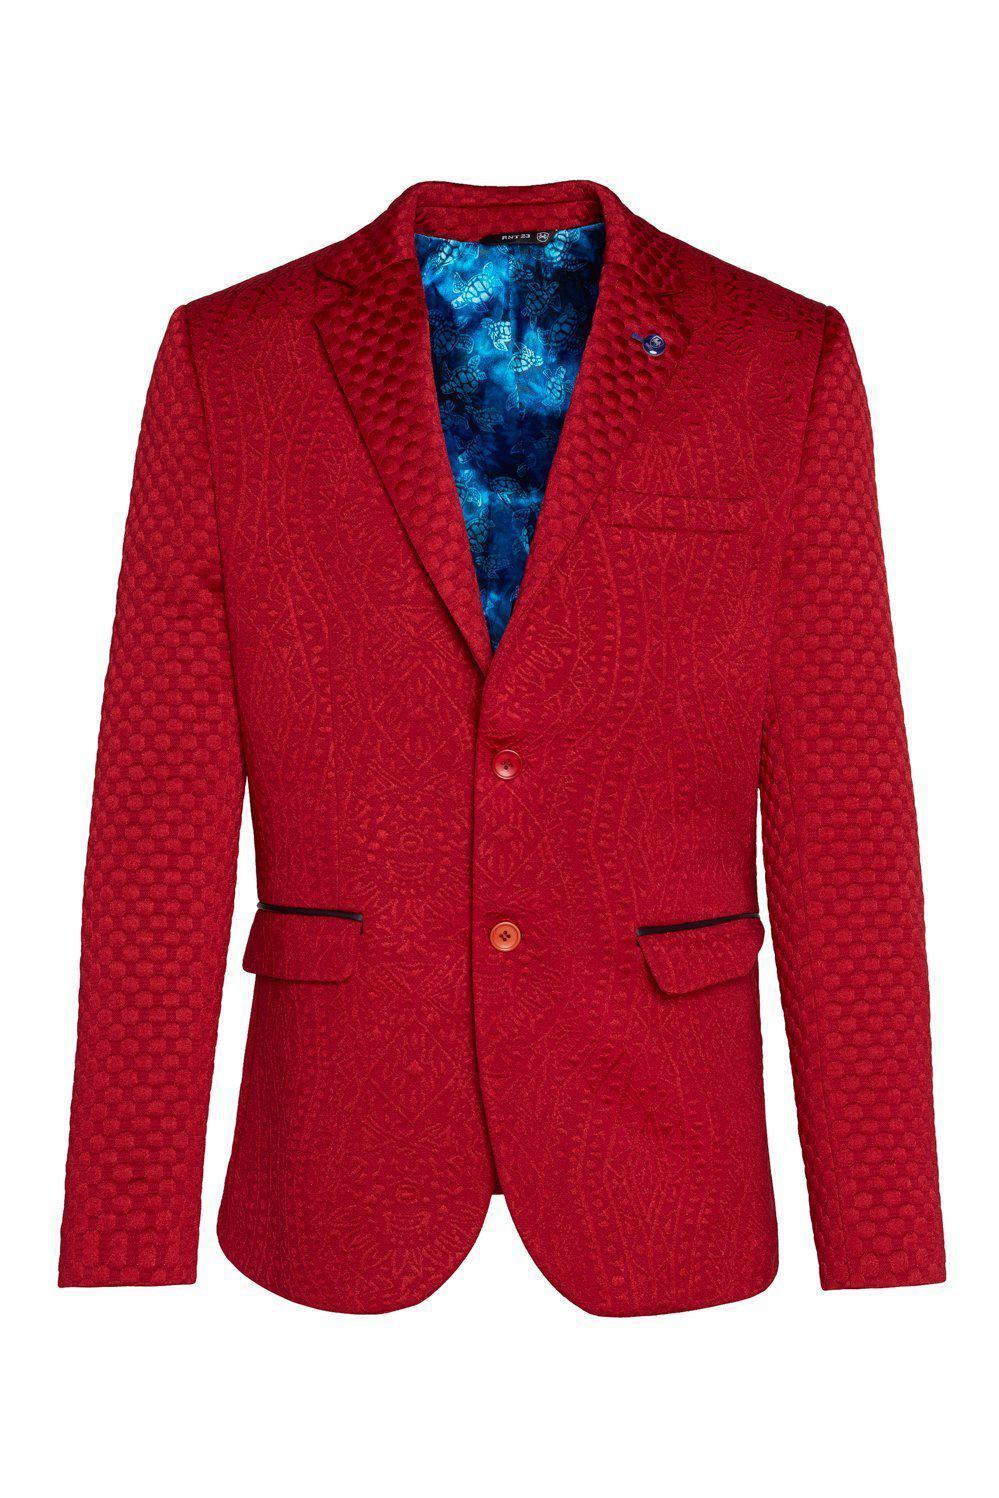 Red-colored fitted brocade designer jacket for men.